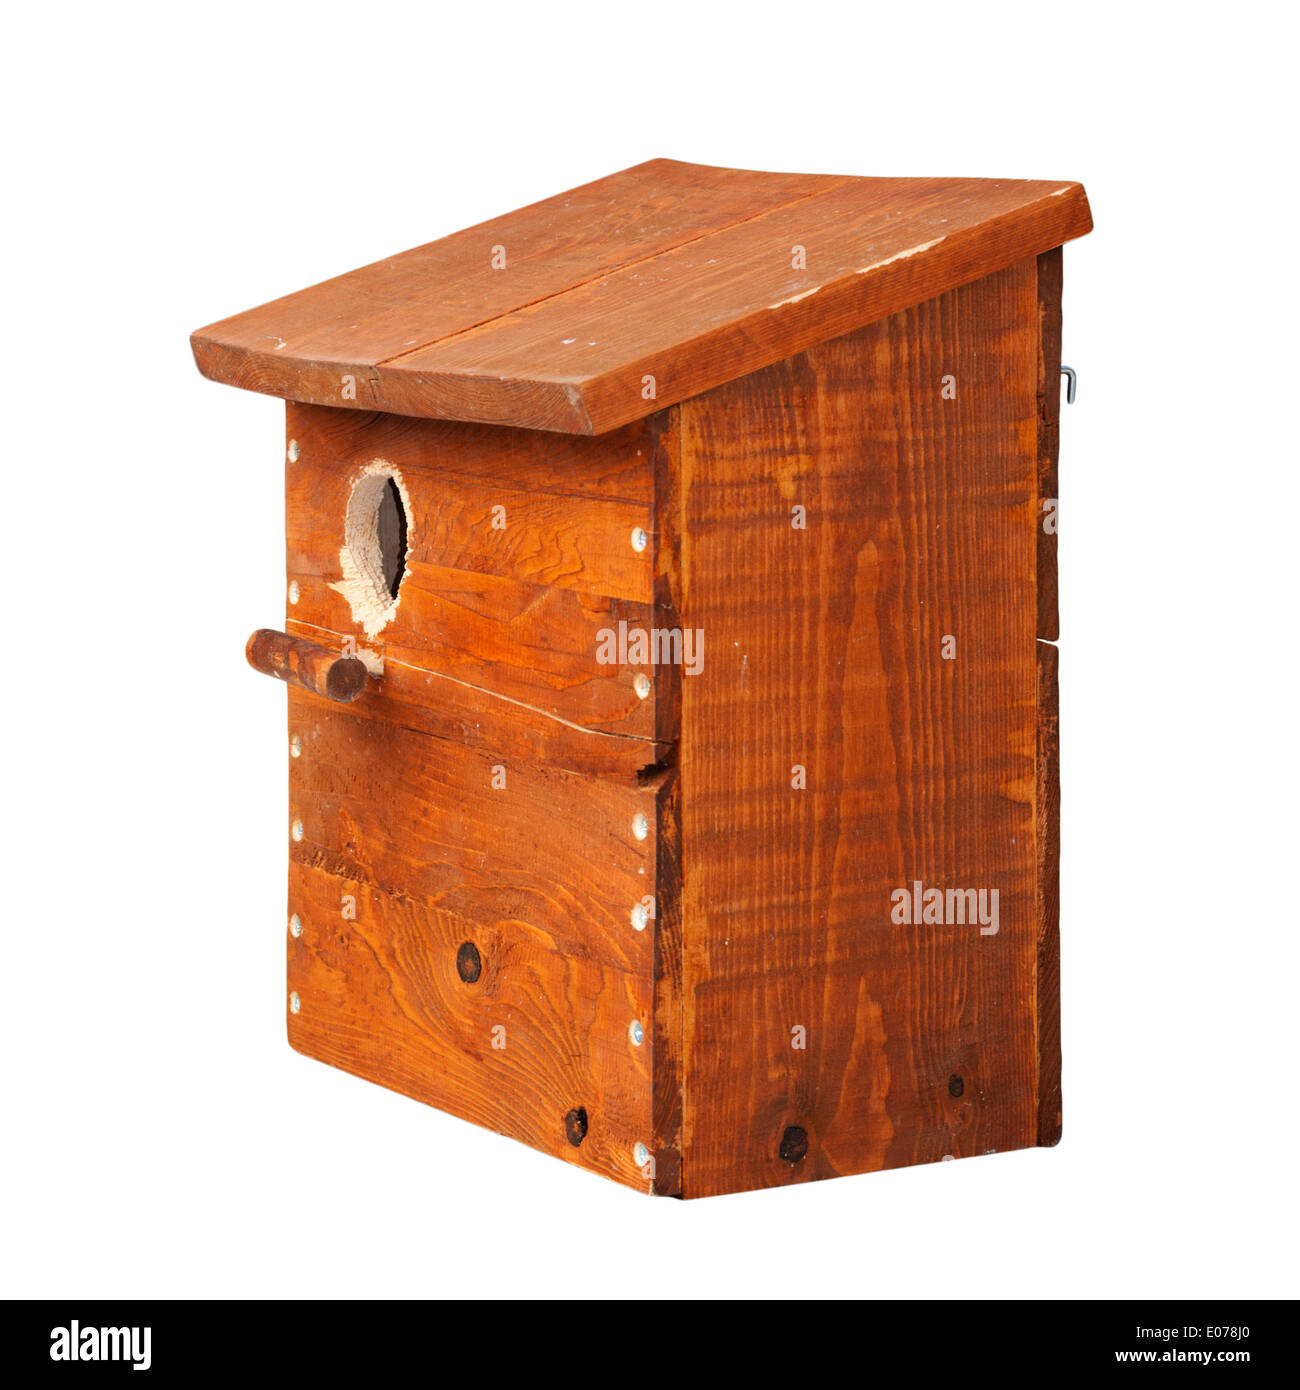 Nest box made of wood isolated on white background Stock Photo